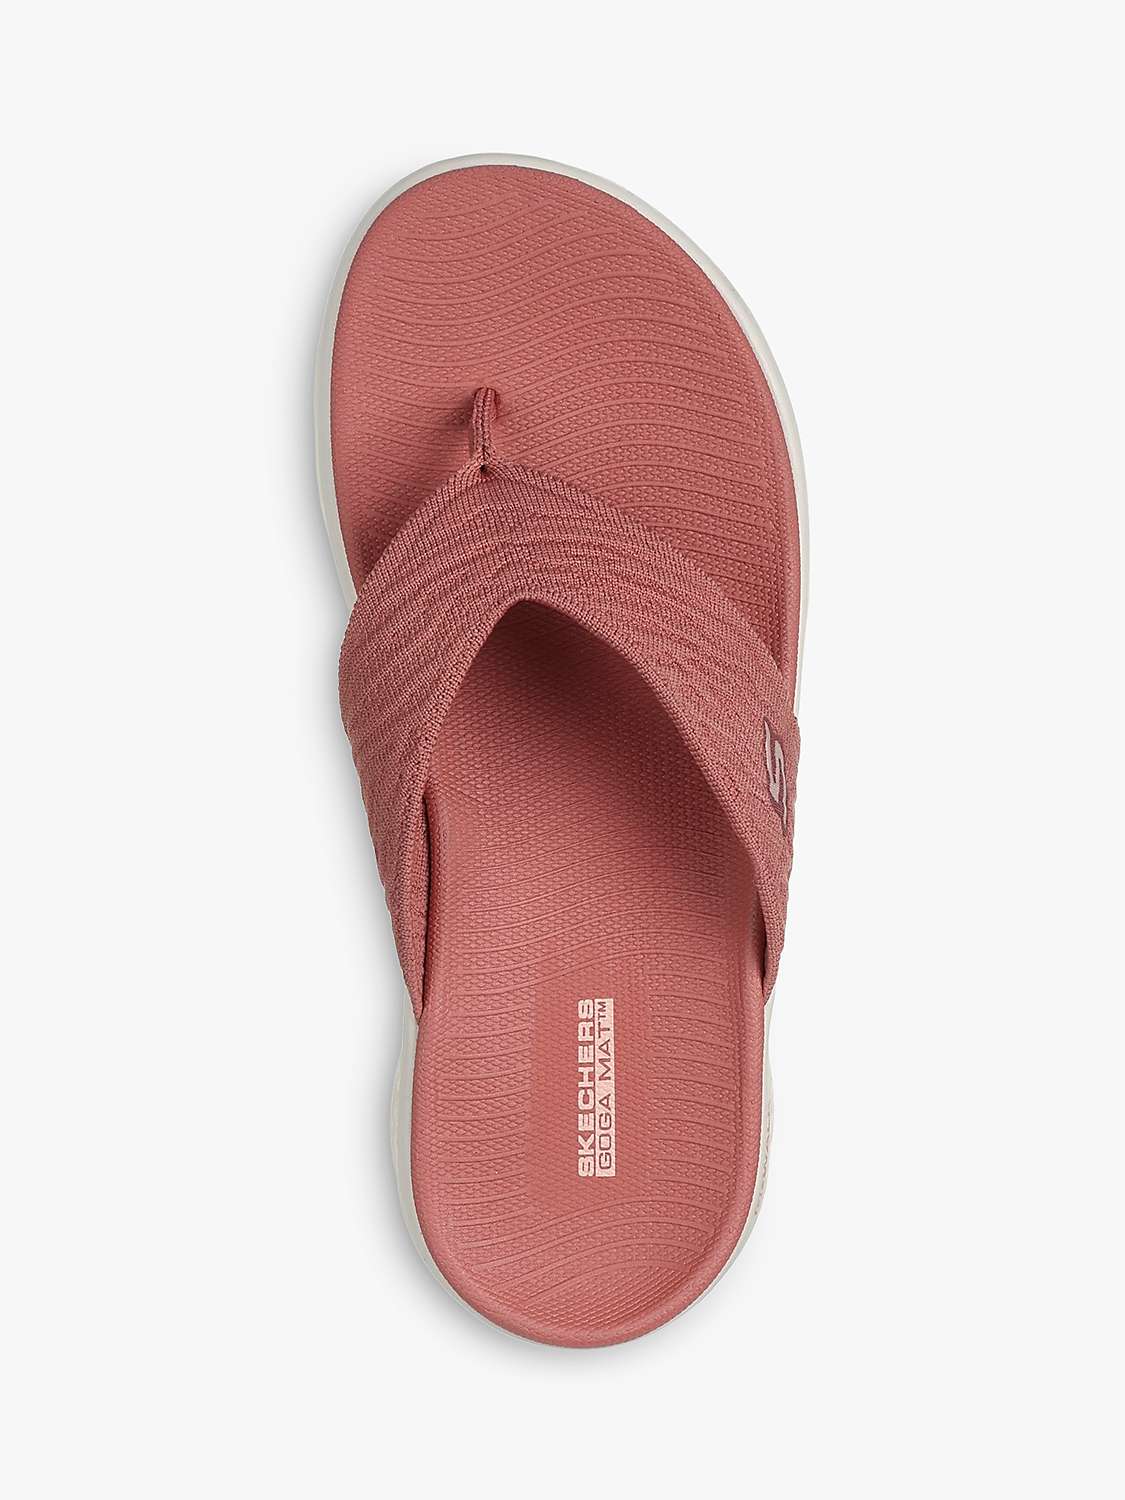 Buy Skechers GO WALK Flex Splendour Sandals Online at johnlewis.com